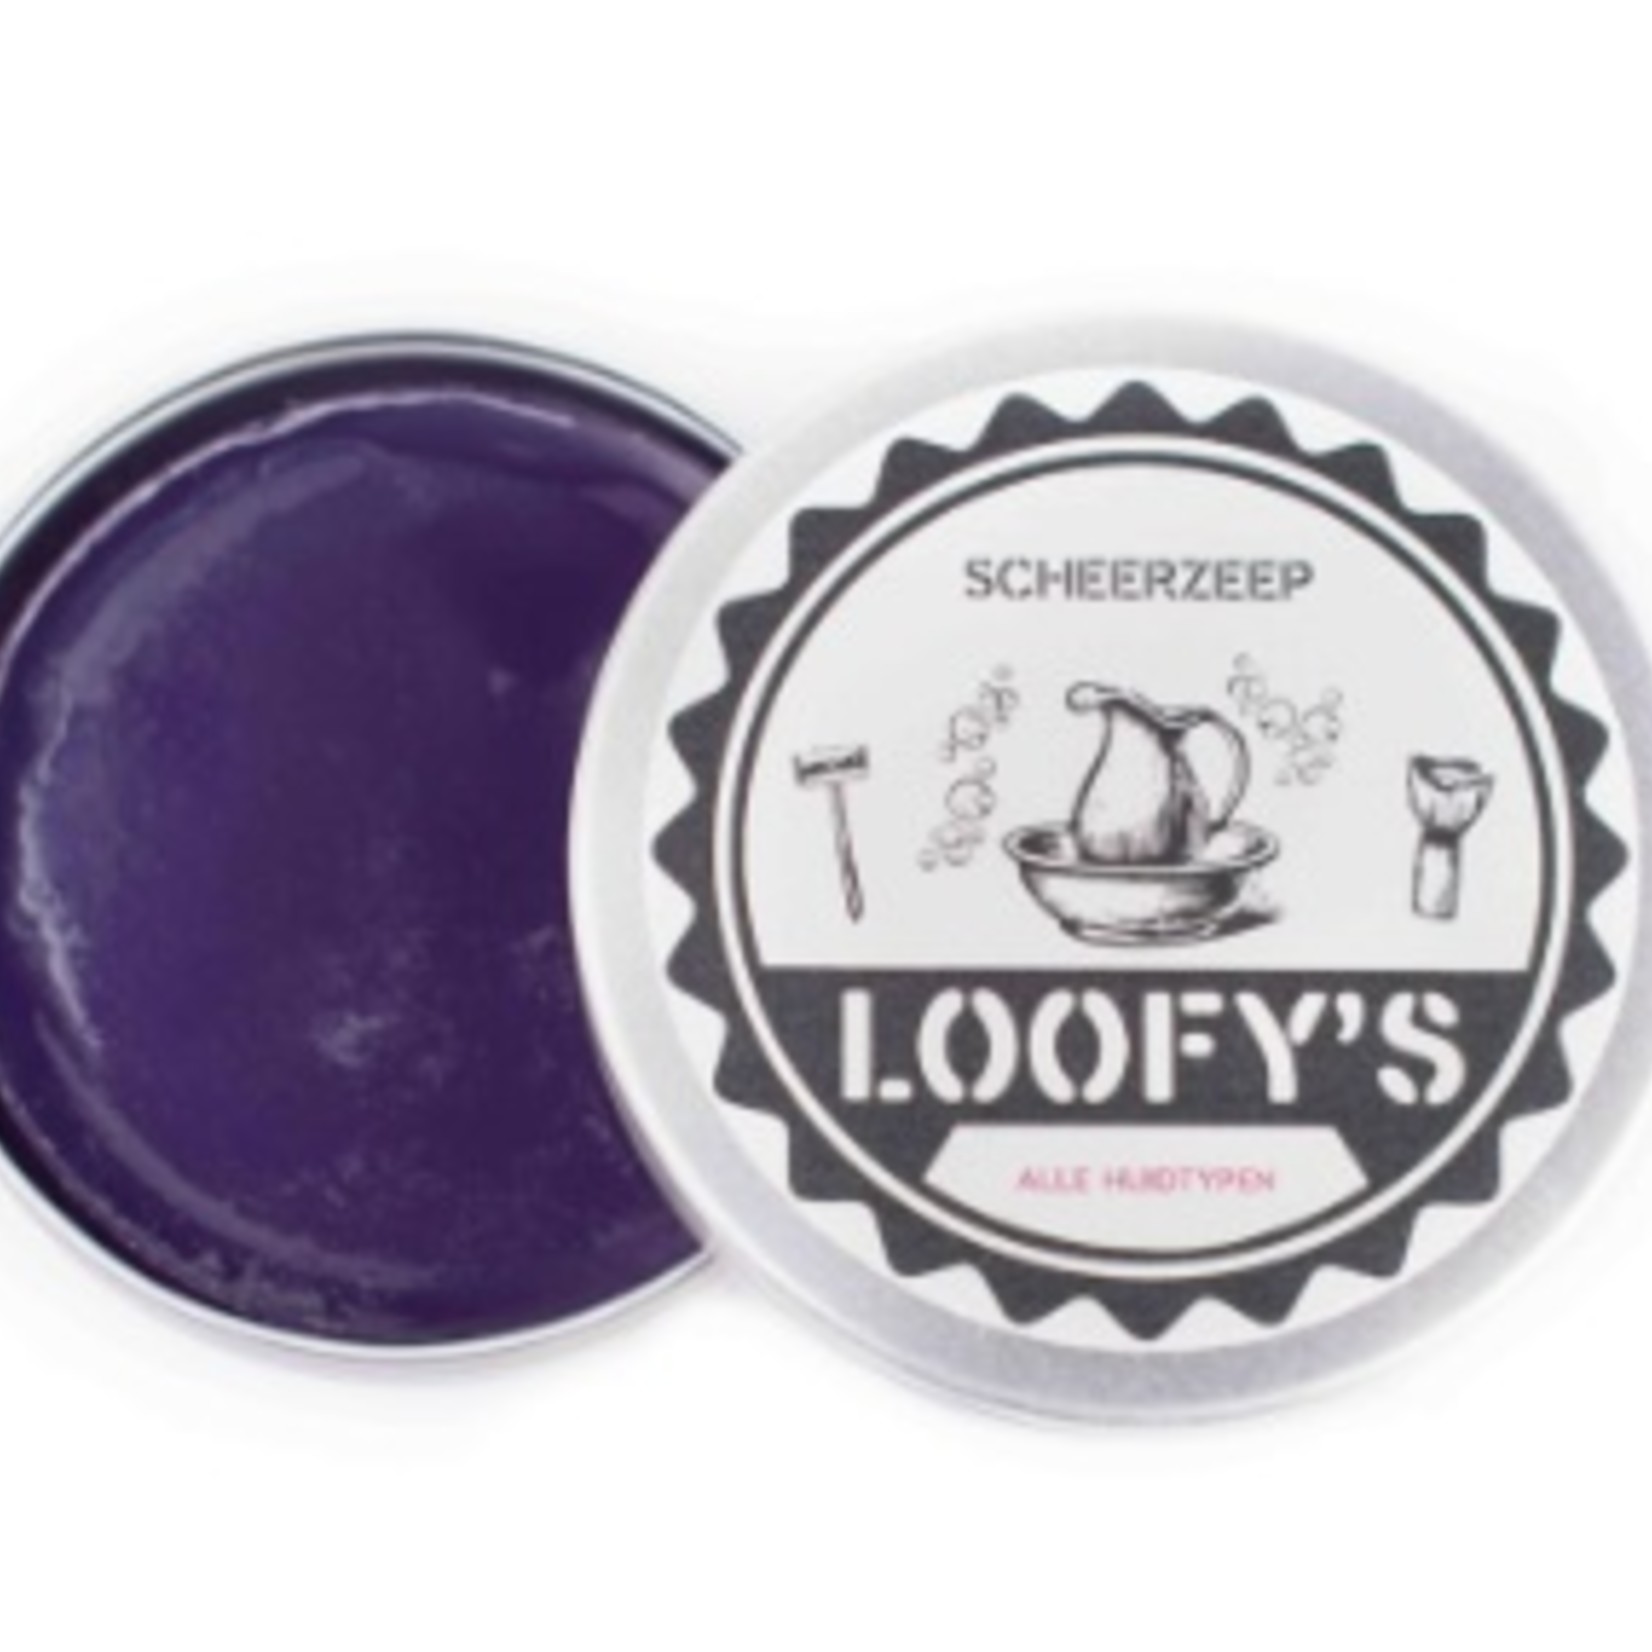 Loofy’s Scheerzeep